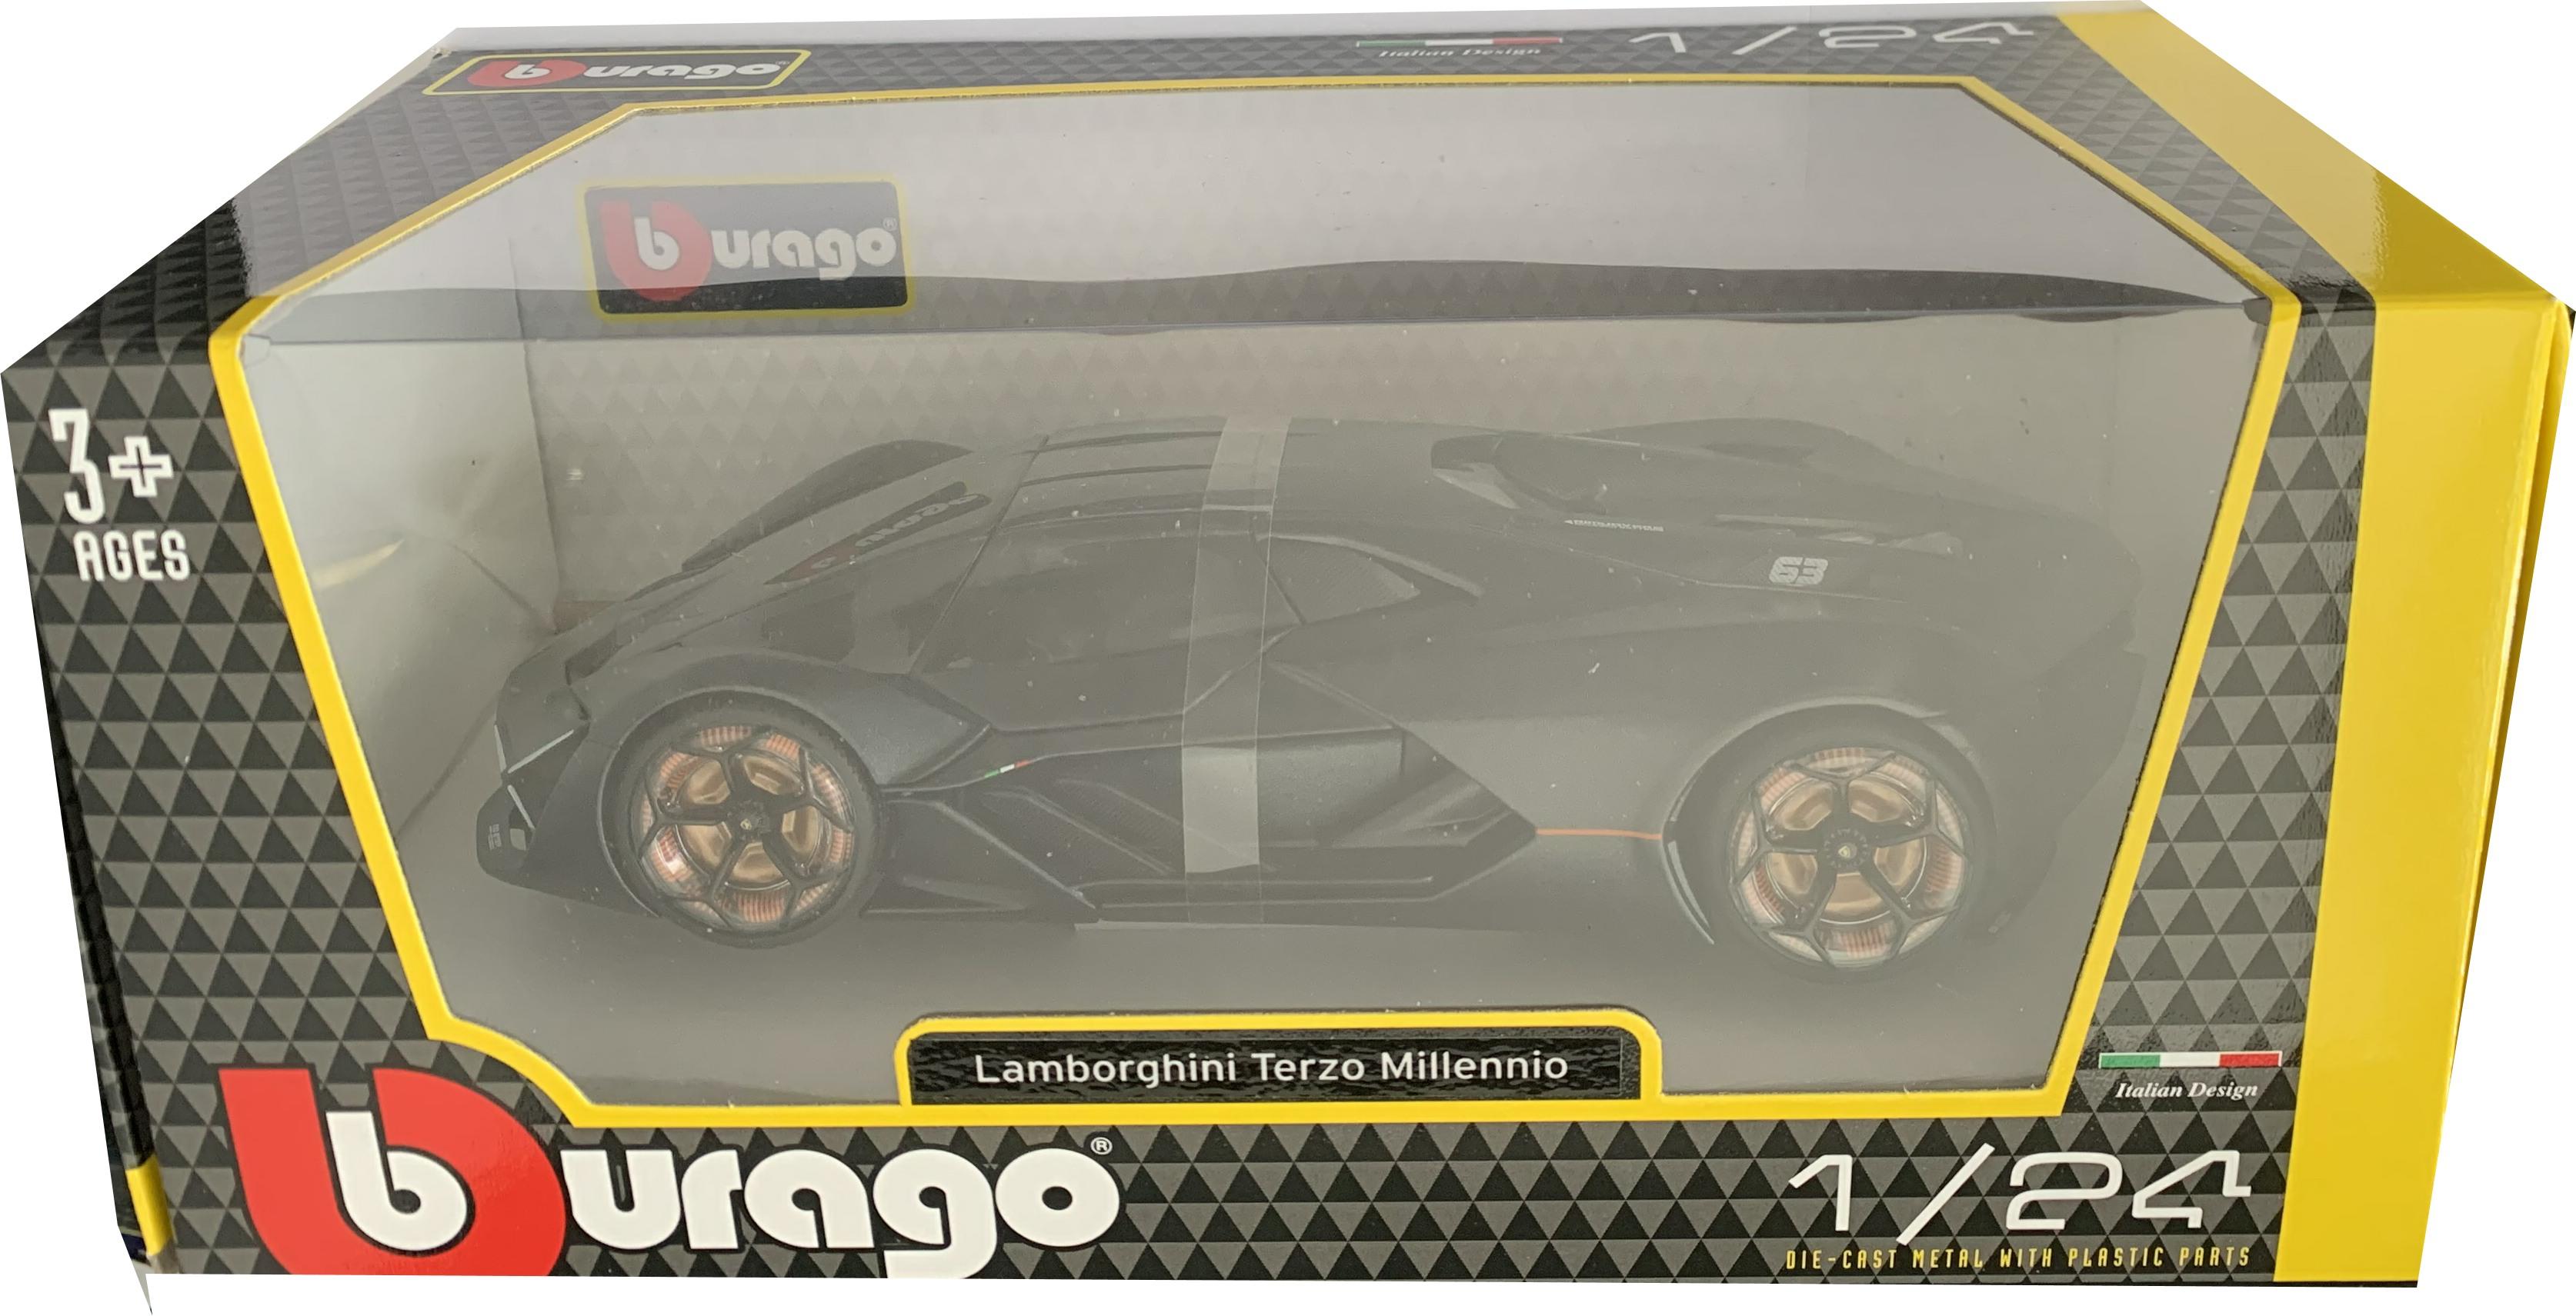 Lamborghini Terzo Millennio in dark grey 1:24 scale model from Bburago